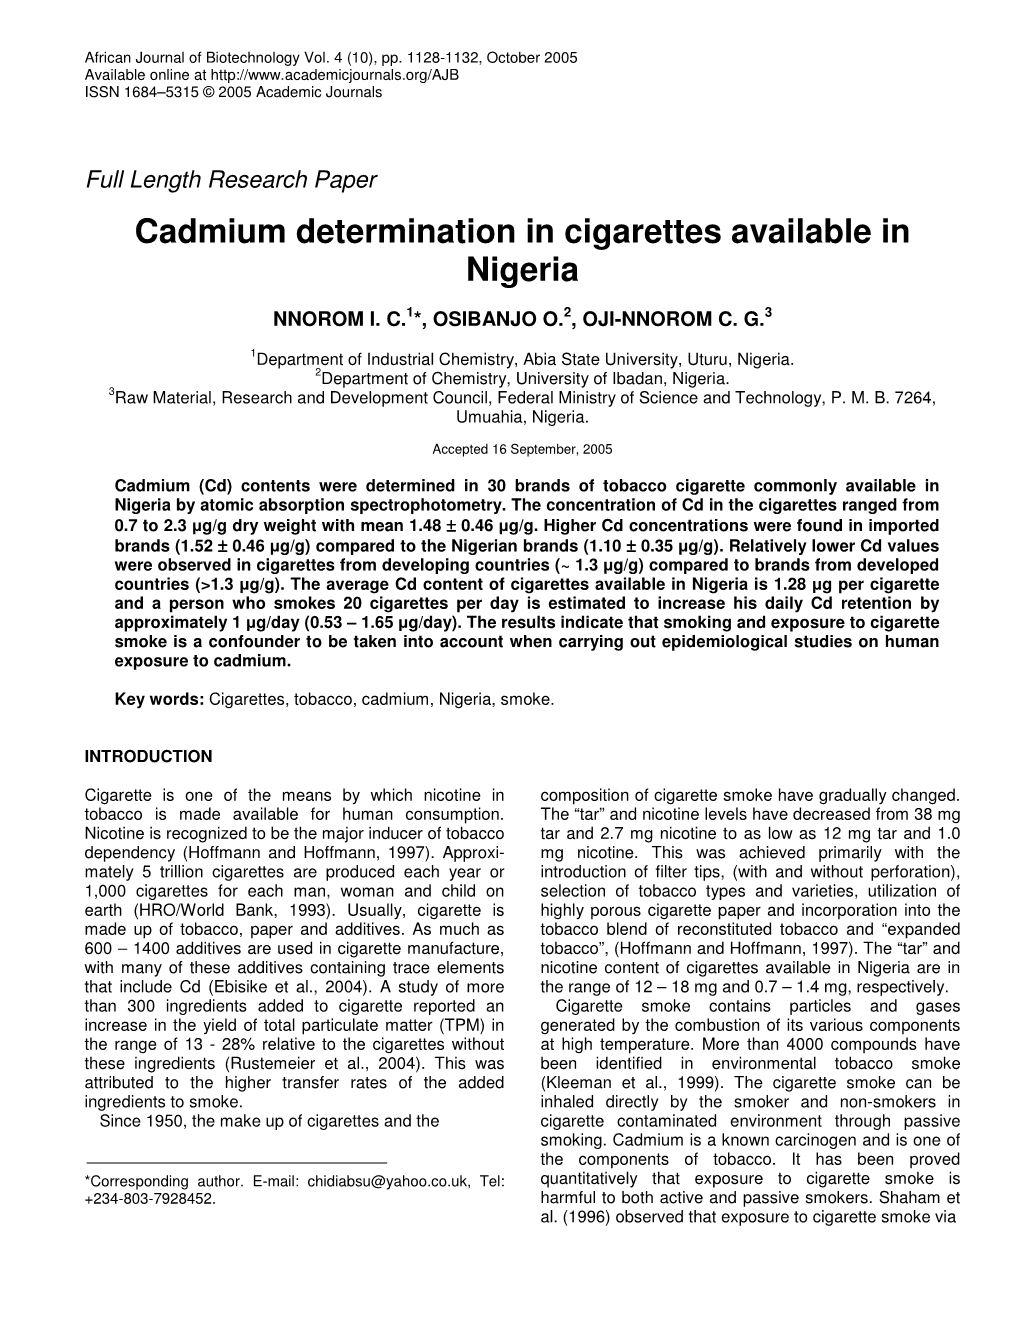 Cadmium Determination in Cigarettes Available in Nigeria